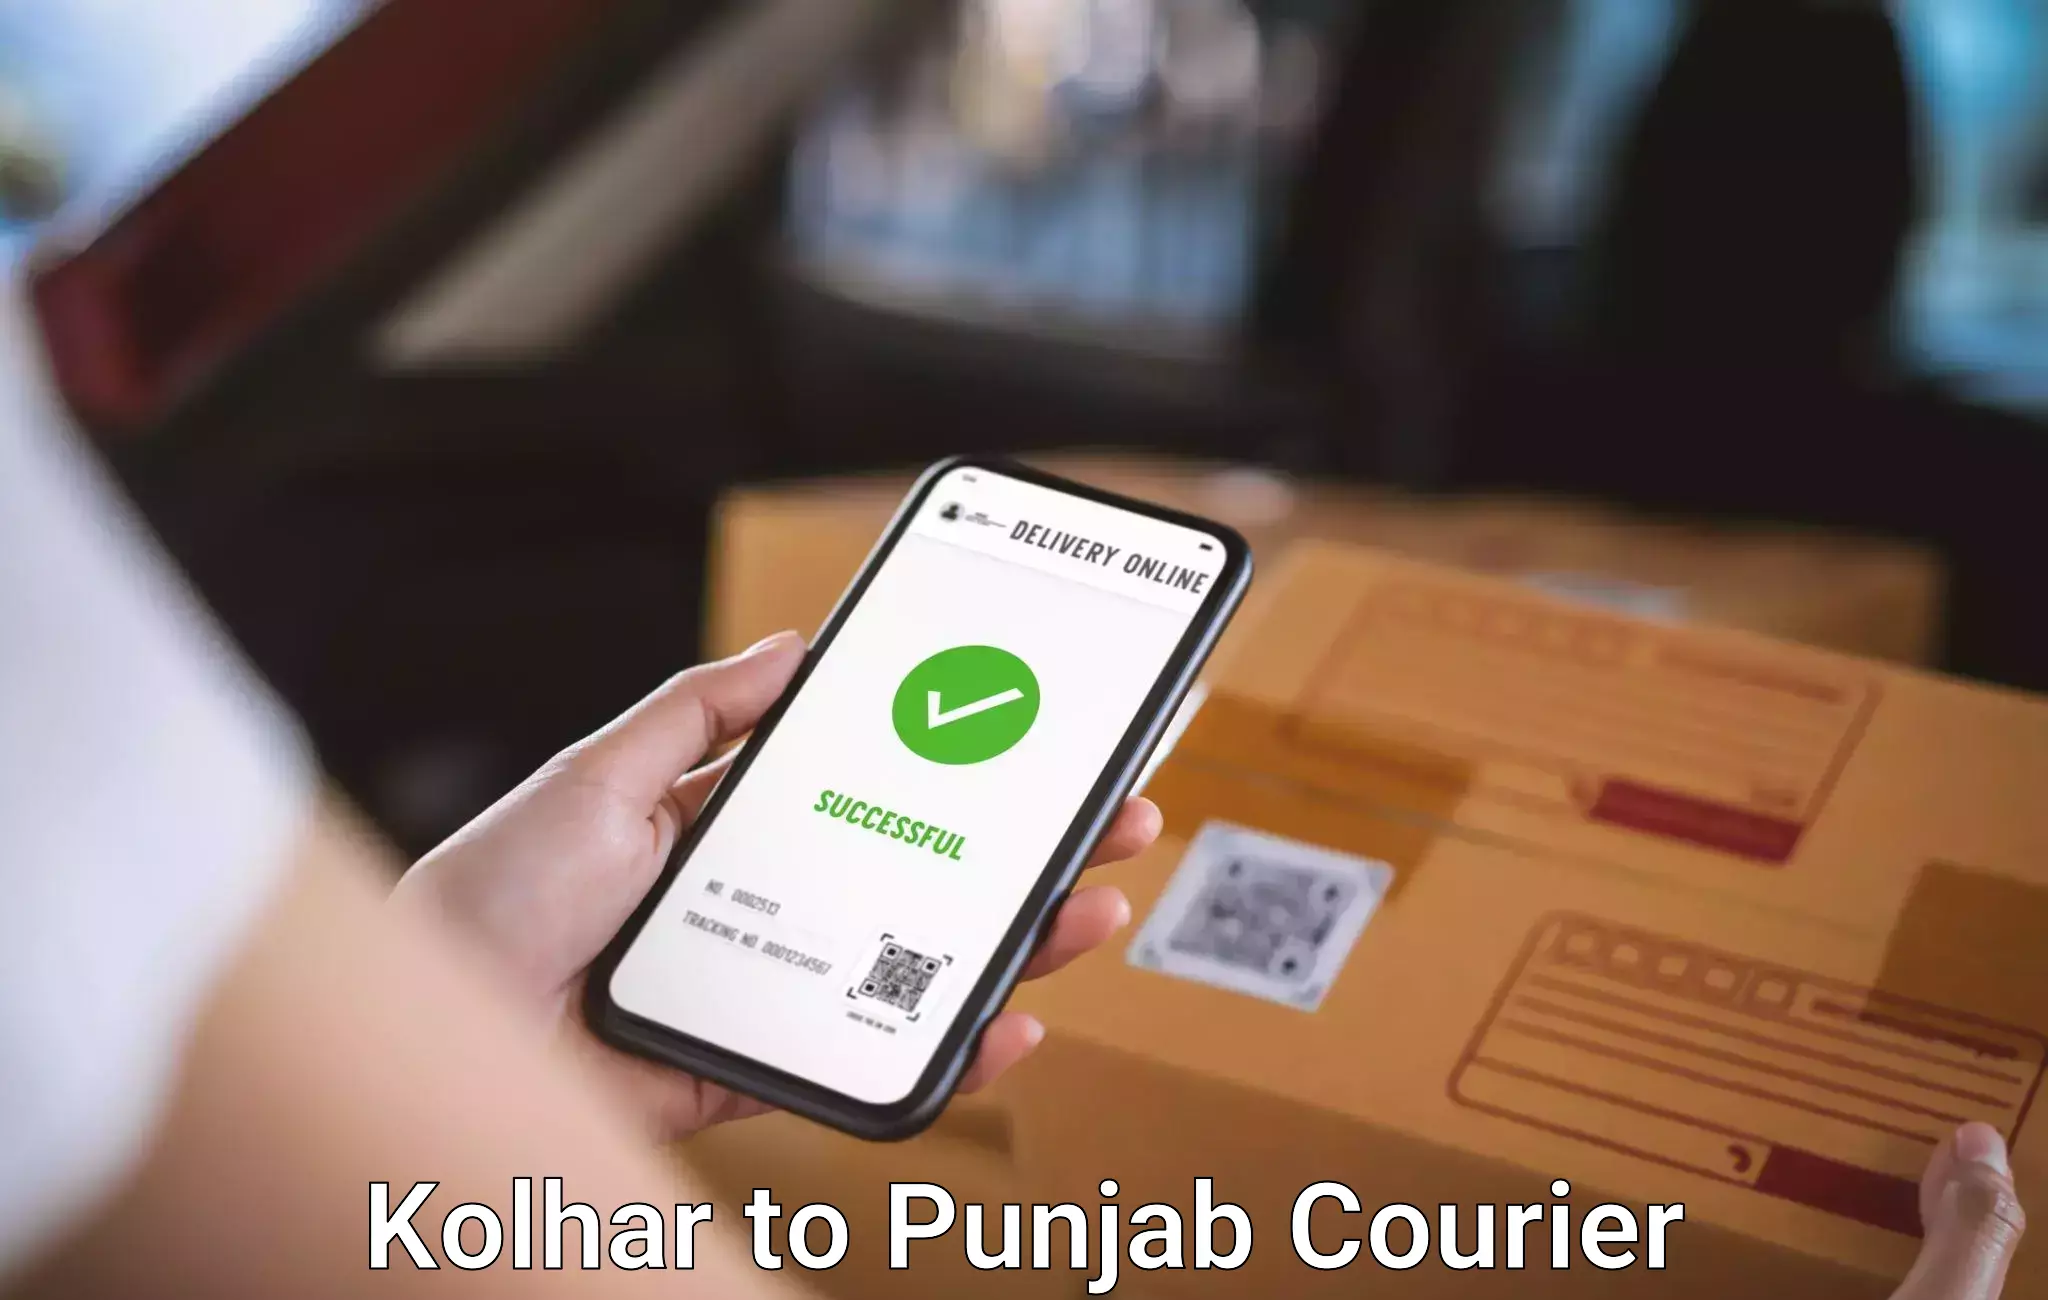 Luggage dispatch service Kolhar to Punjab